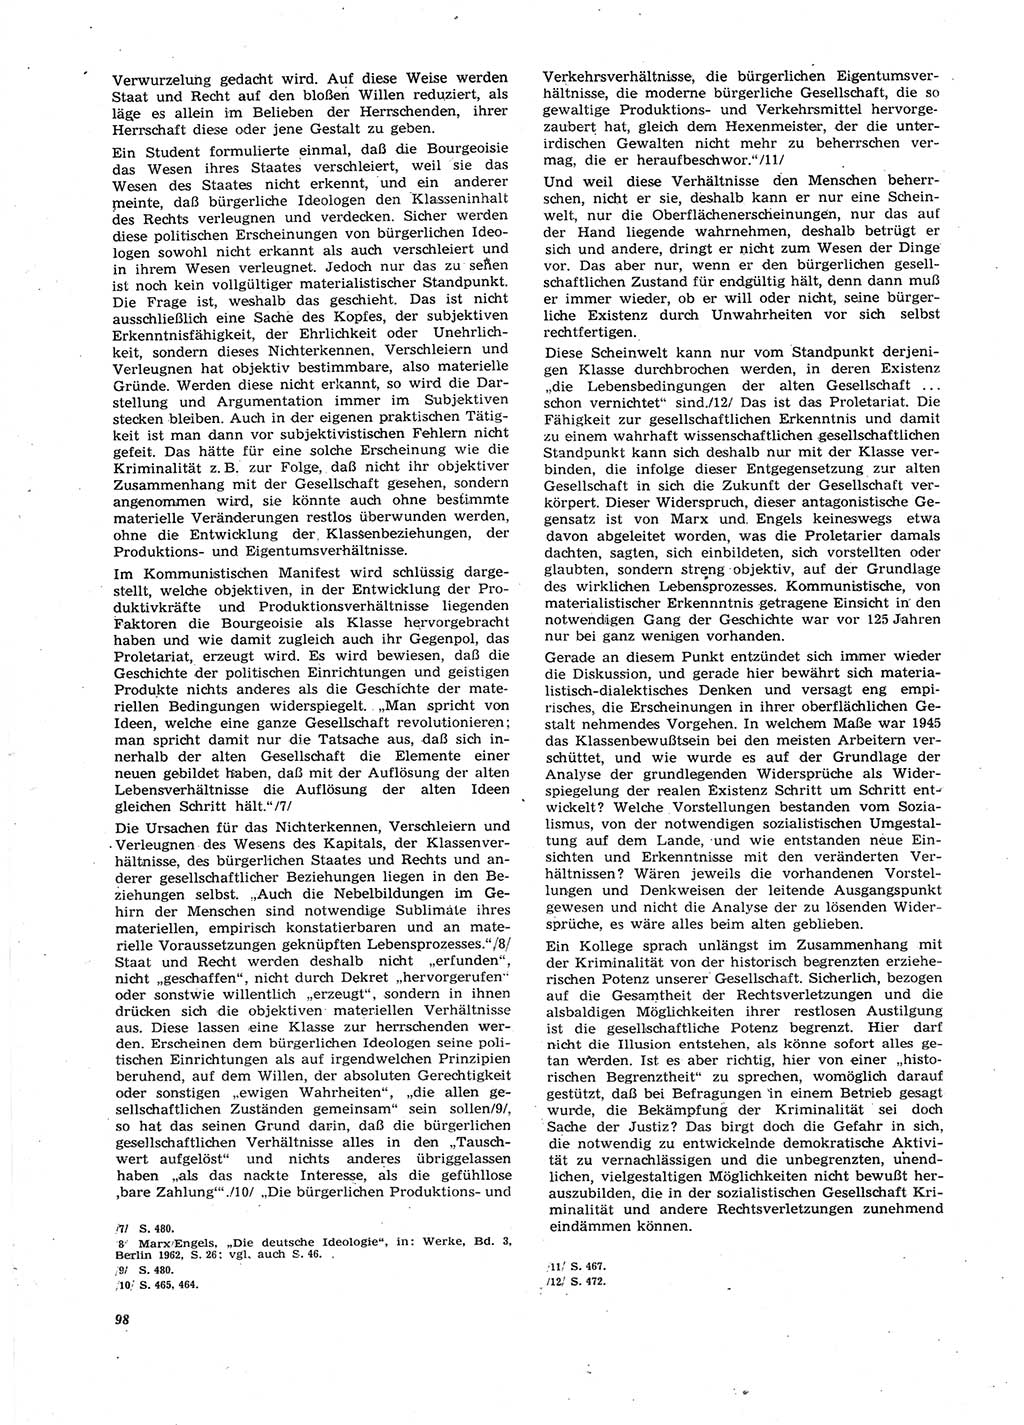 Neue Justiz (NJ), Zeitschrift für Recht und Rechtswissenschaft [Deutsche Demokratische Republik (DDR)], 27. Jahrgang 1973, Seite 98 (NJ DDR 1973, S. 98)